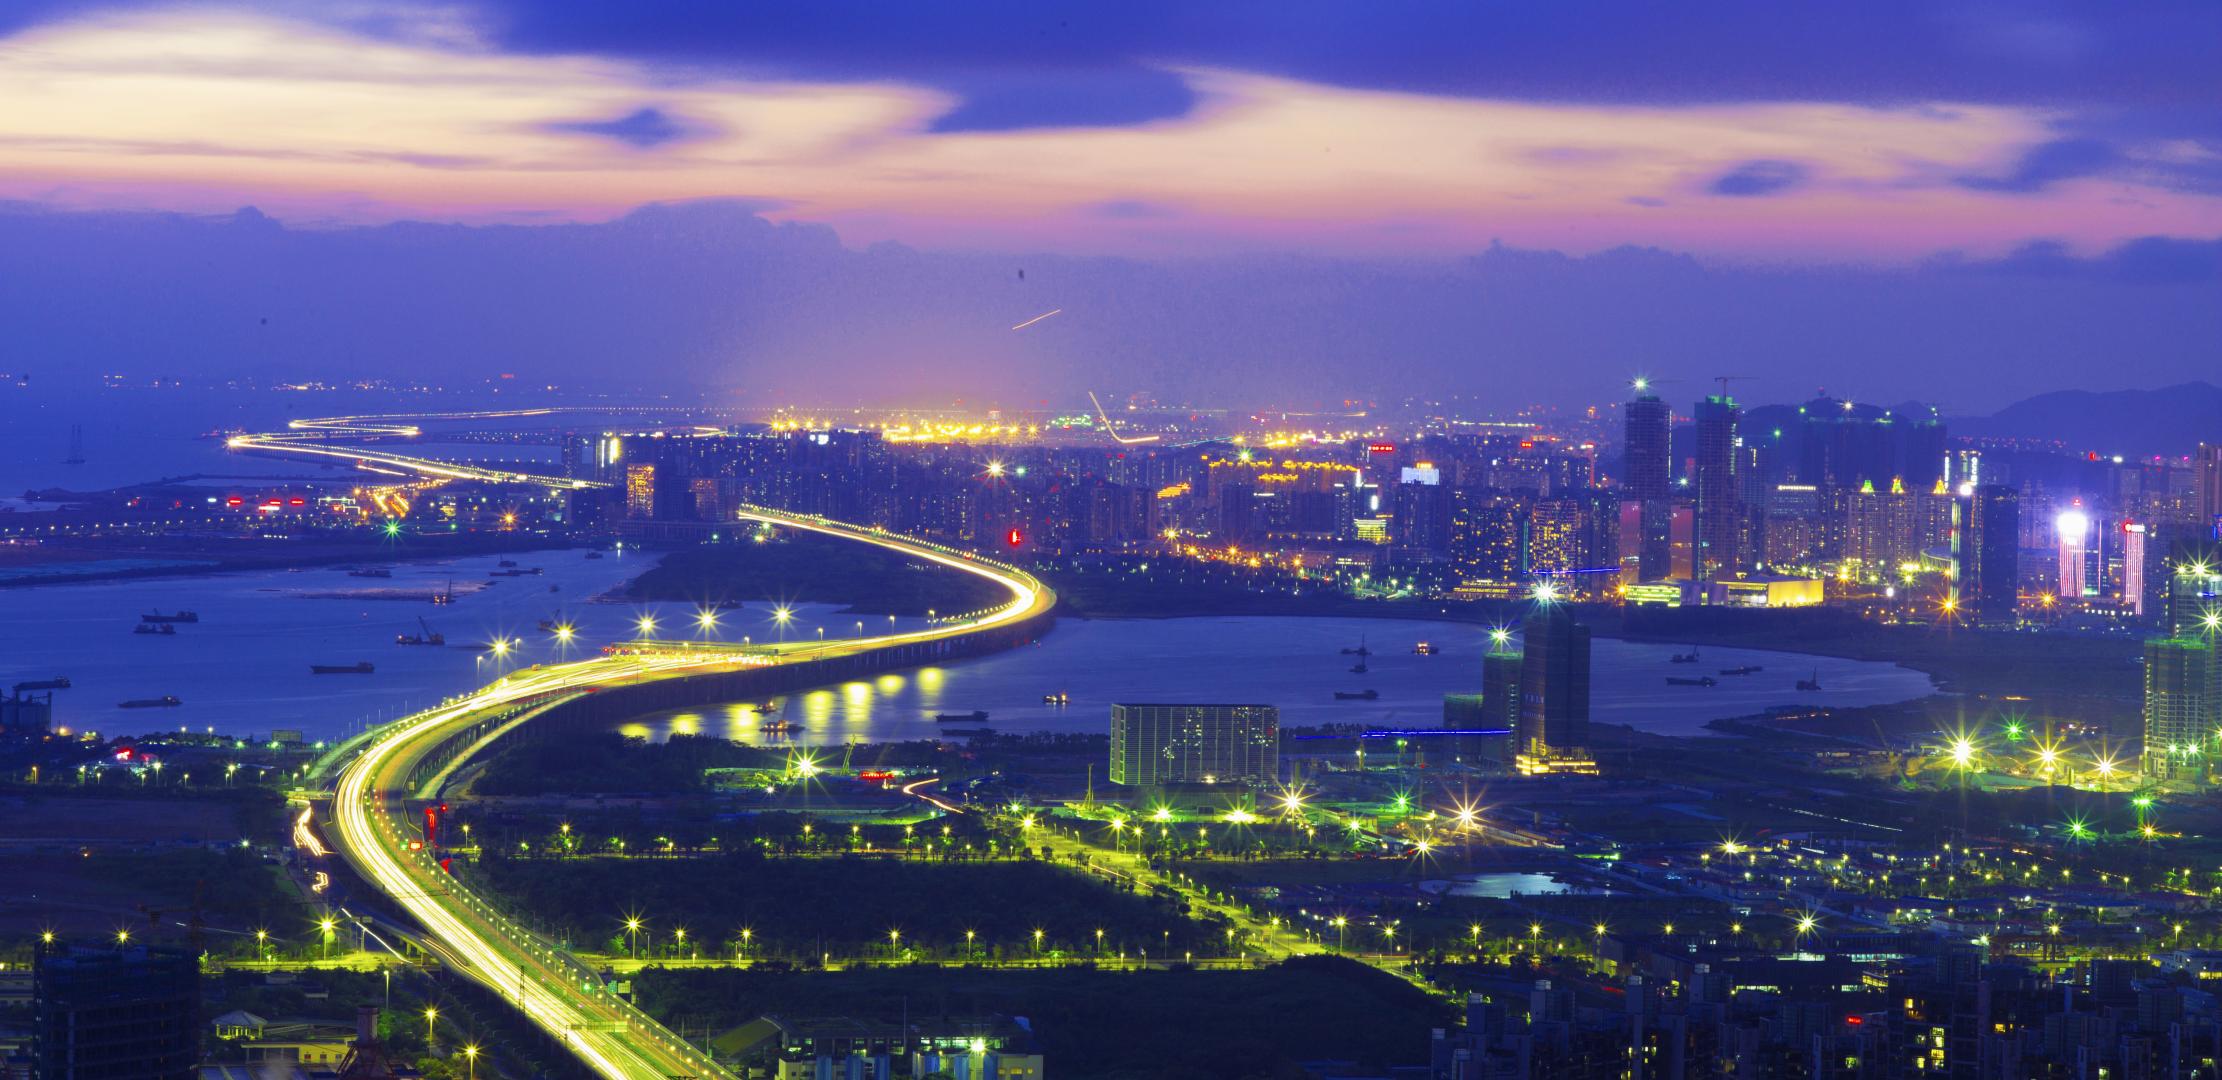 Shenzhen announced as new host of World Match Racing Tour finals 2021-2025